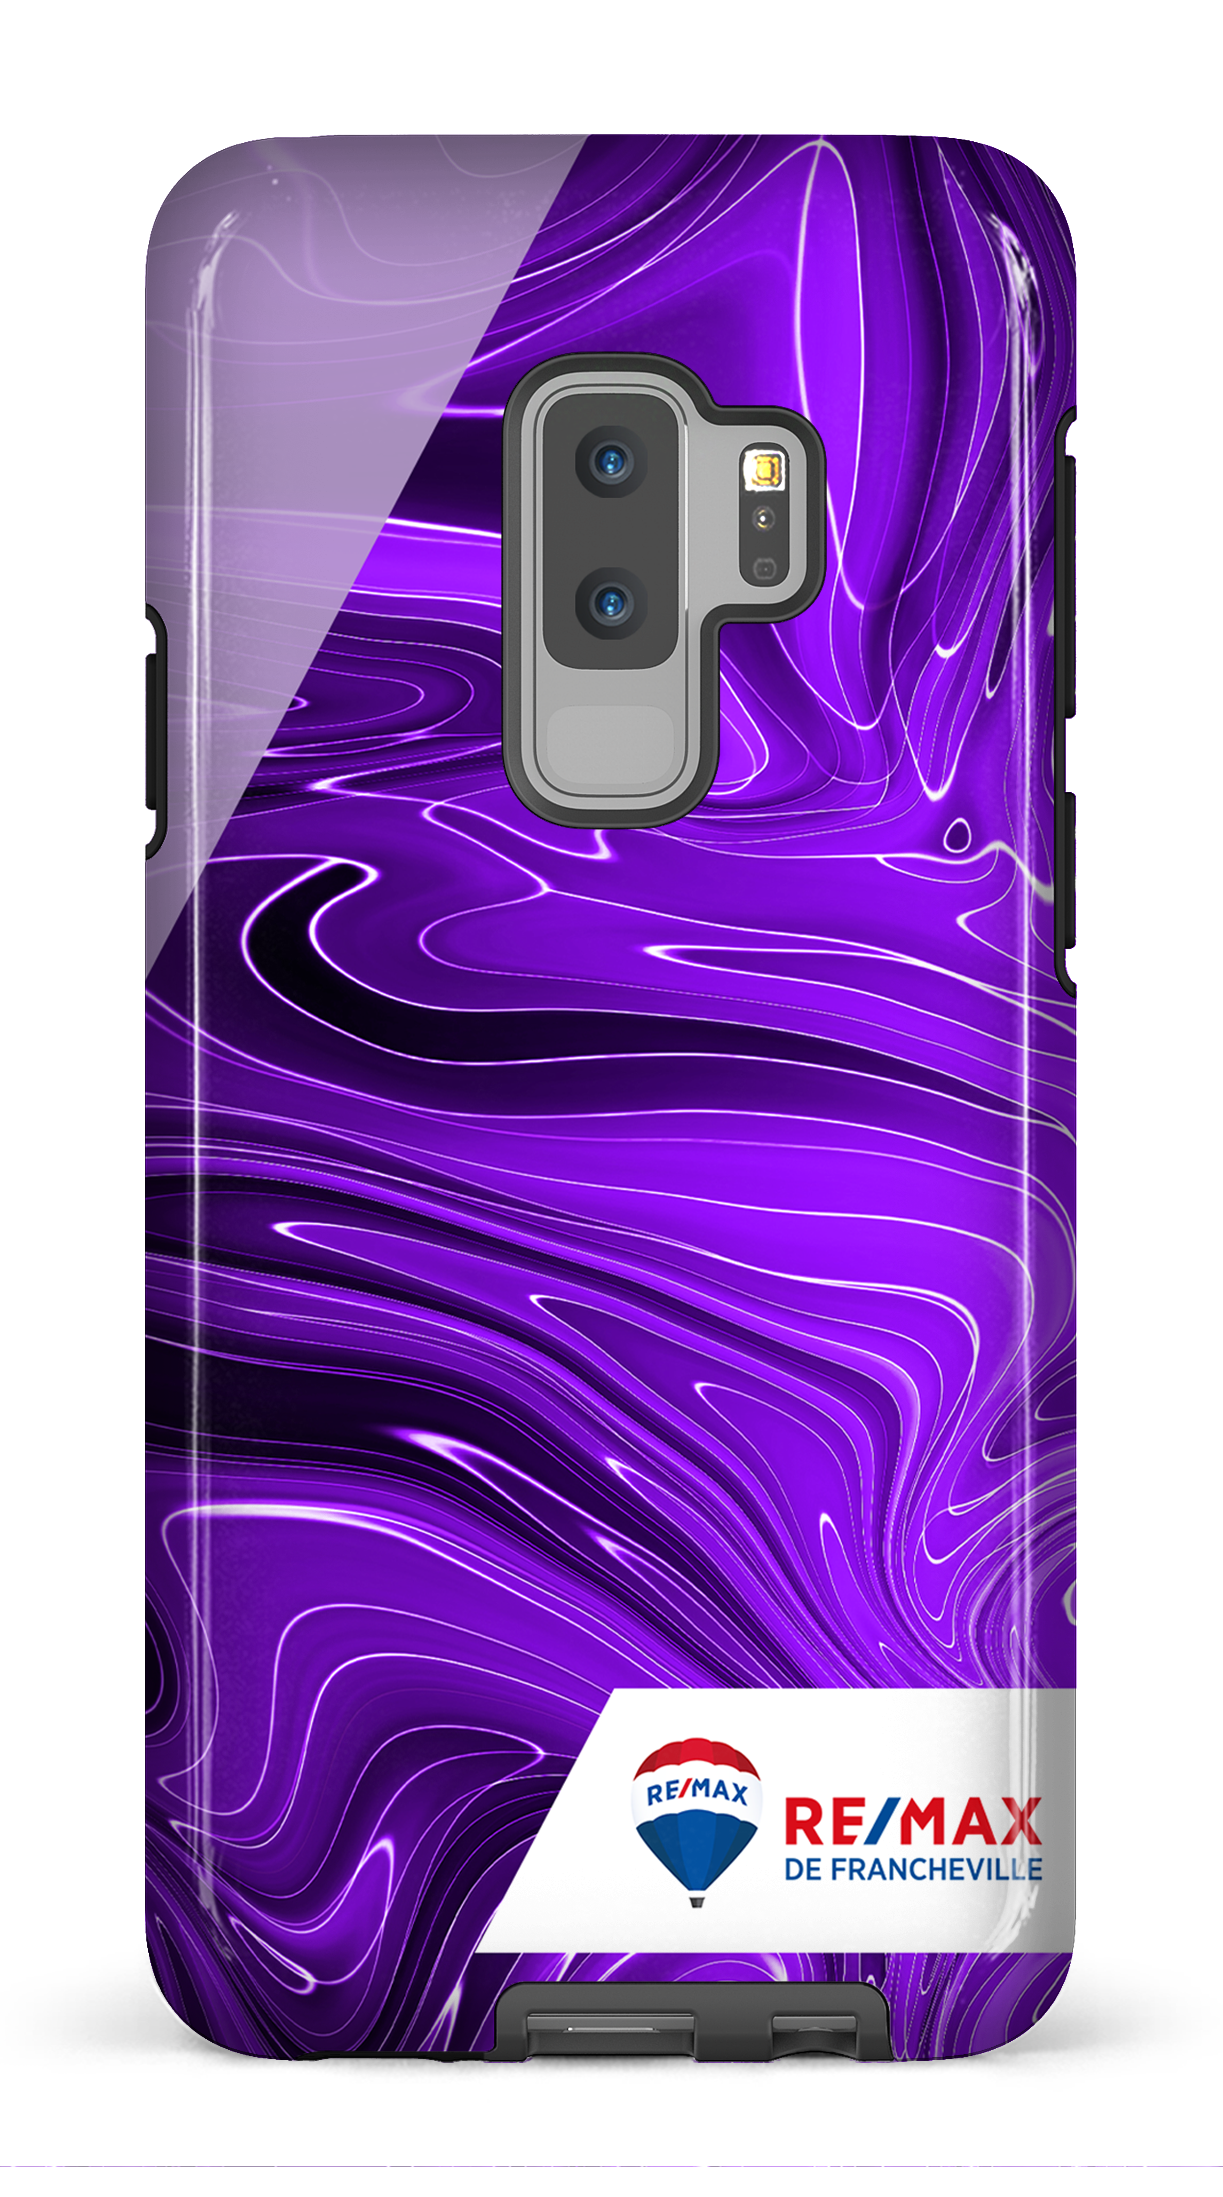 Peinture marbrée sombre violette de Francheville - Galaxy S9 Plus